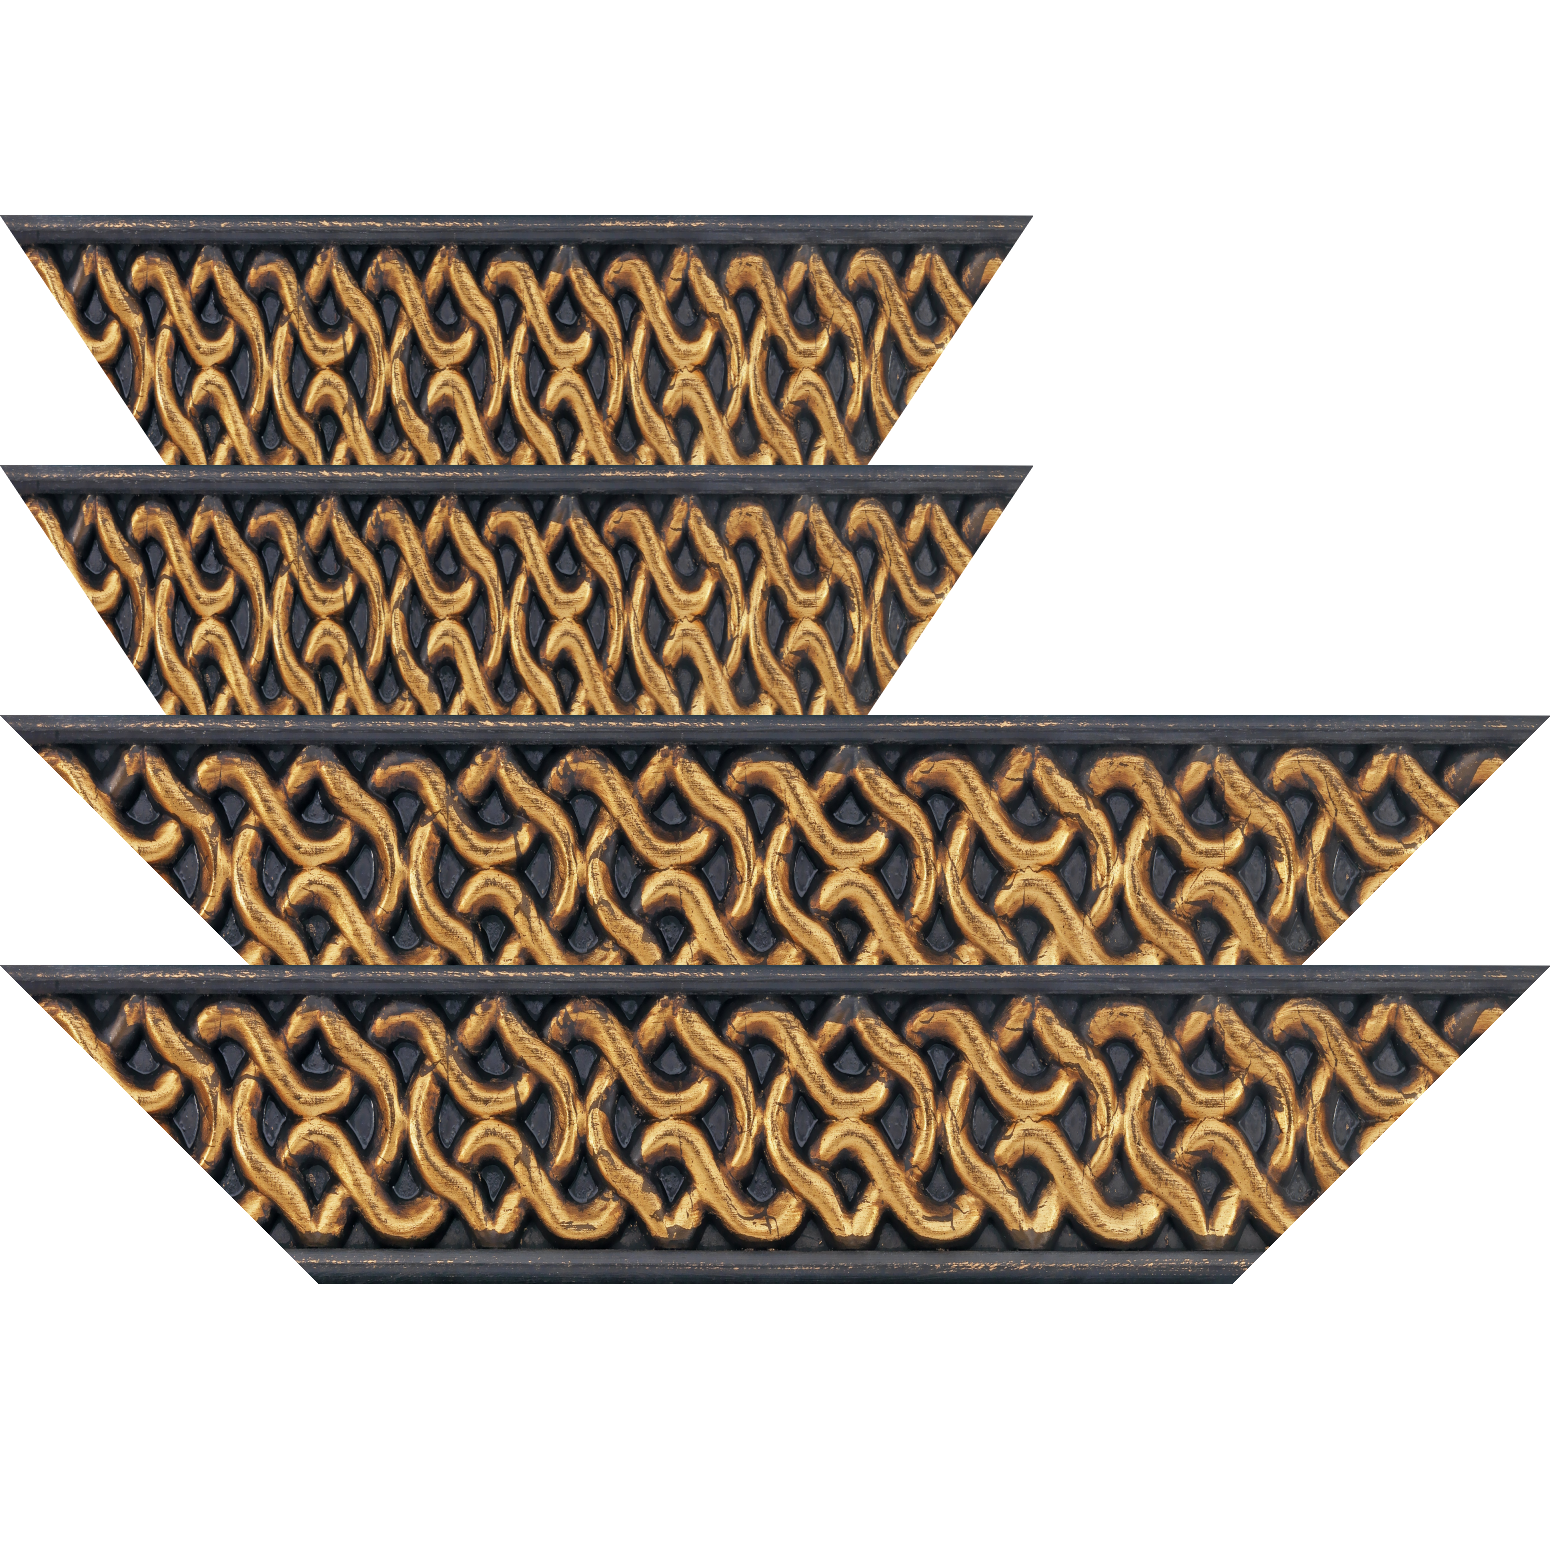 Baguette bois profil plat largeur 10.4cm or antique décor entrelacé en rélief  et bord noir vieilli - 59.4x84.1